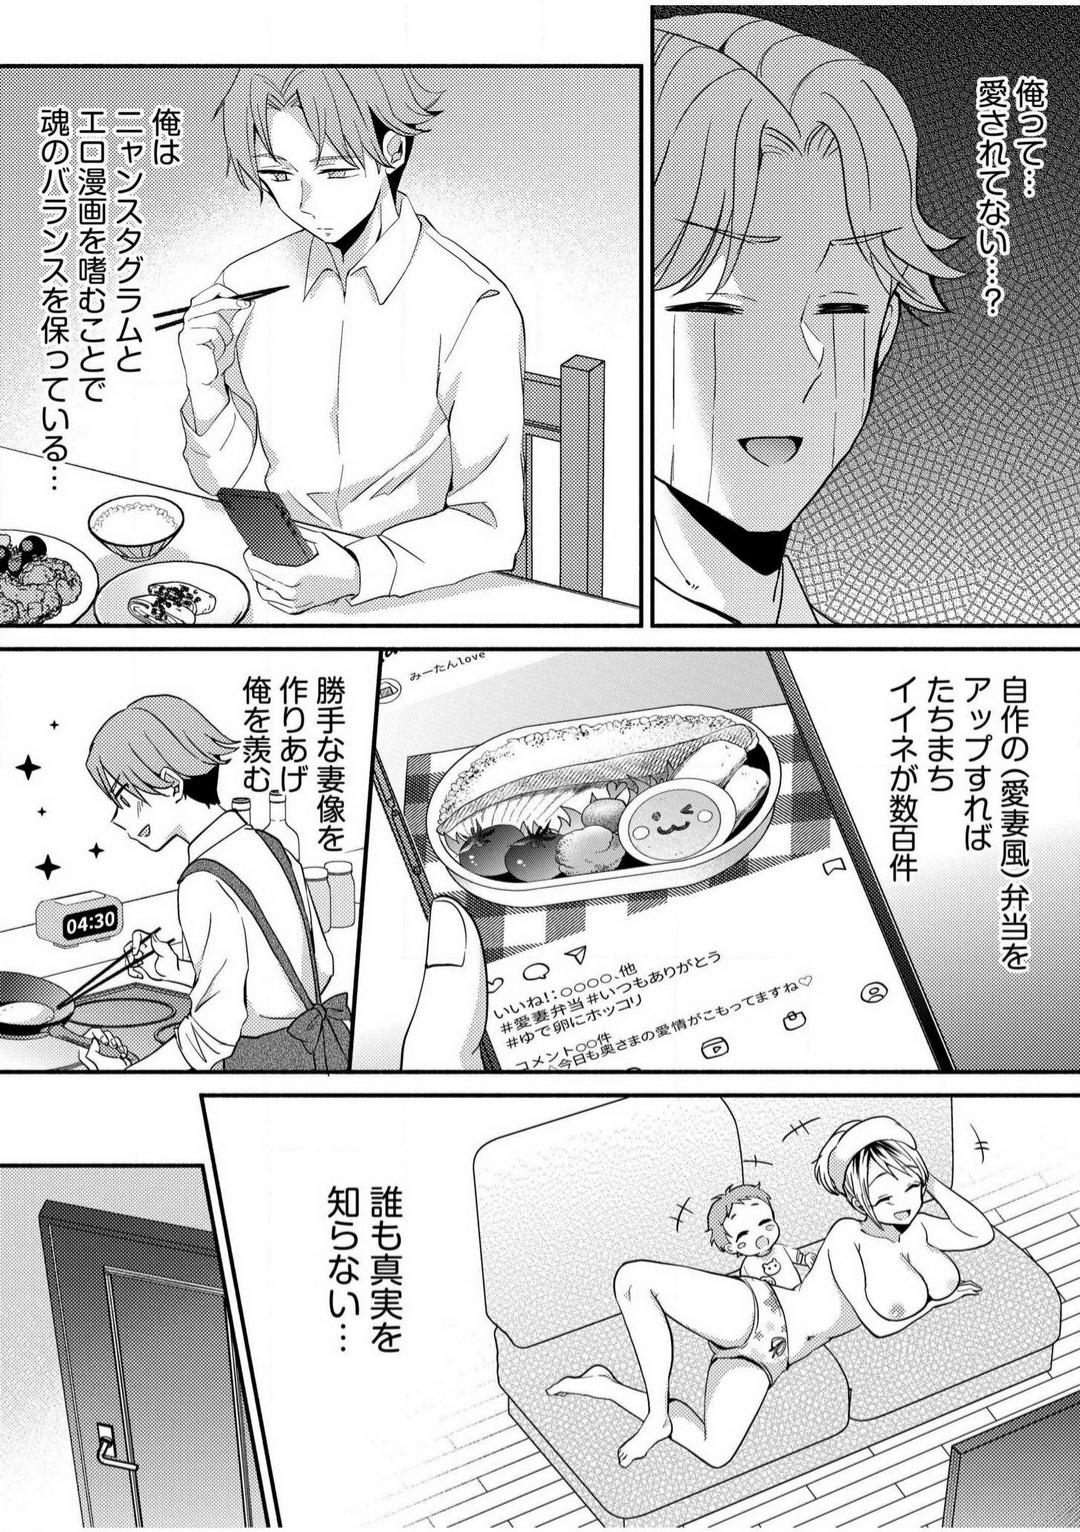 Parties [niko] Darashina Tsuma to Yoshi Yoshi Etchi! Kimochīi kara Oku ni Chodaii! [R18] 1-6 Ride - Page 7